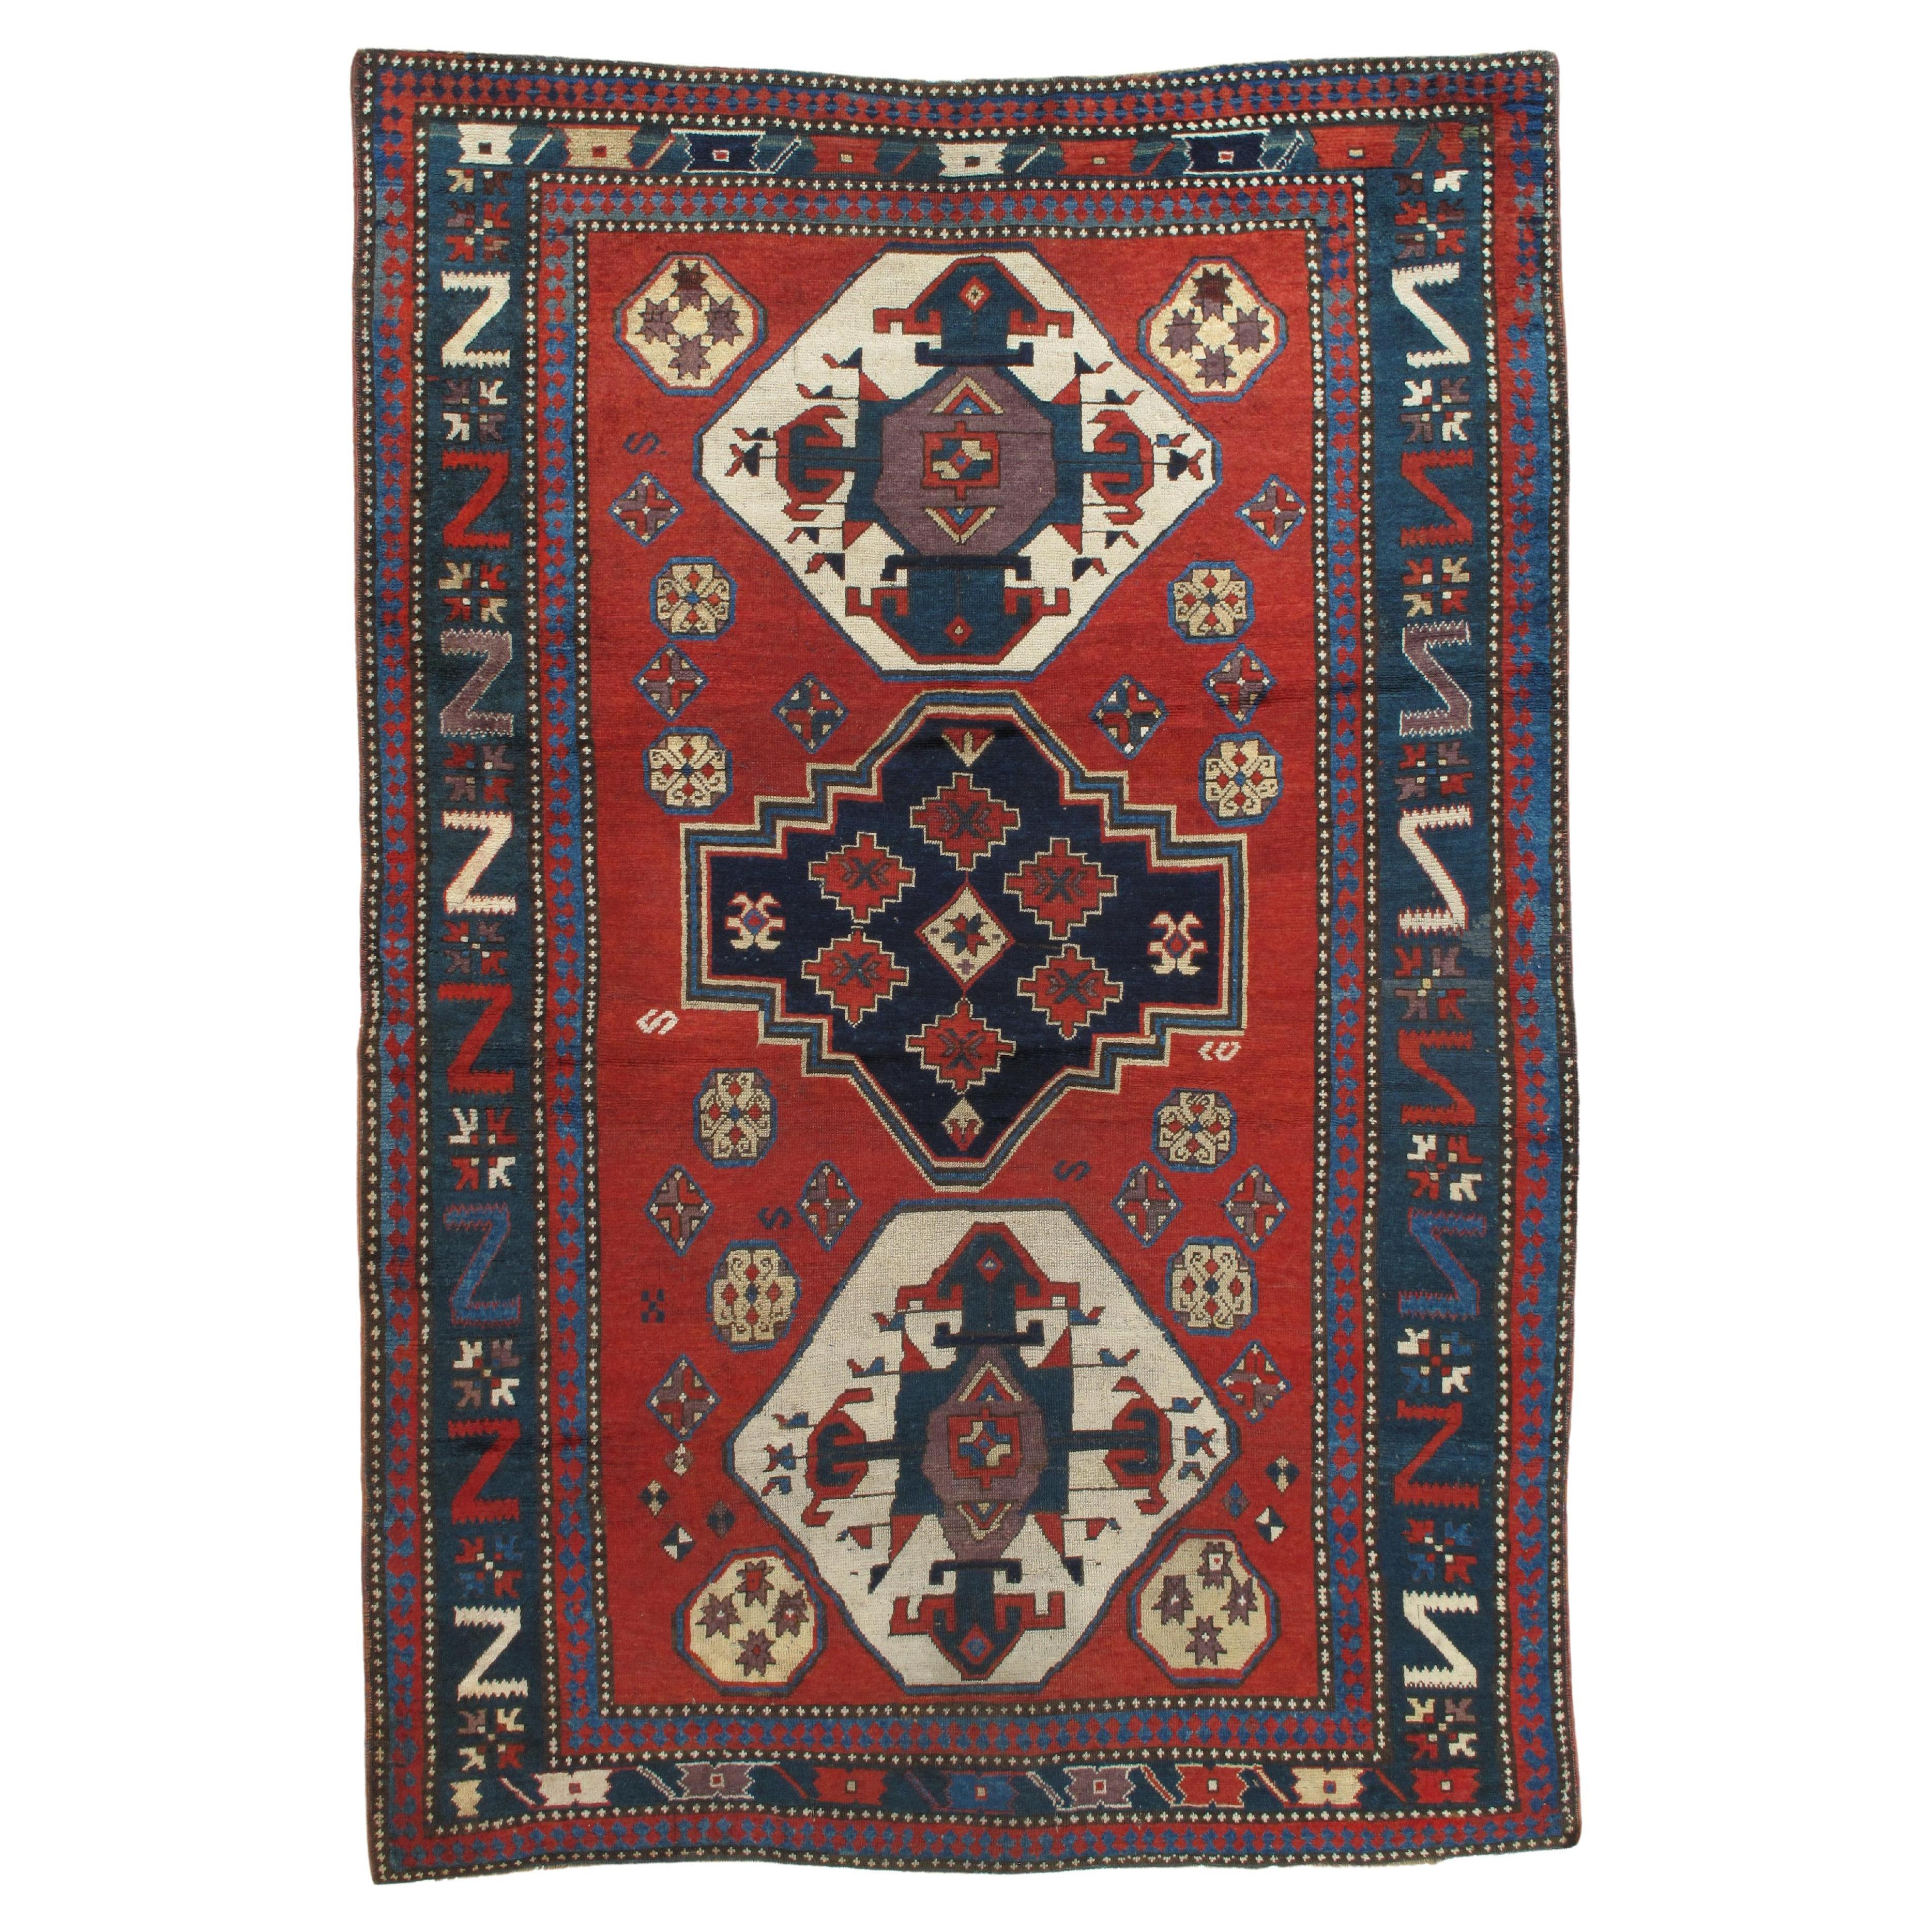 Antiker kaukasischer Teppich, handgefertigt aus Wolle, Rost, Elfenbein, Marineblau, Hellblau und Geometrisch